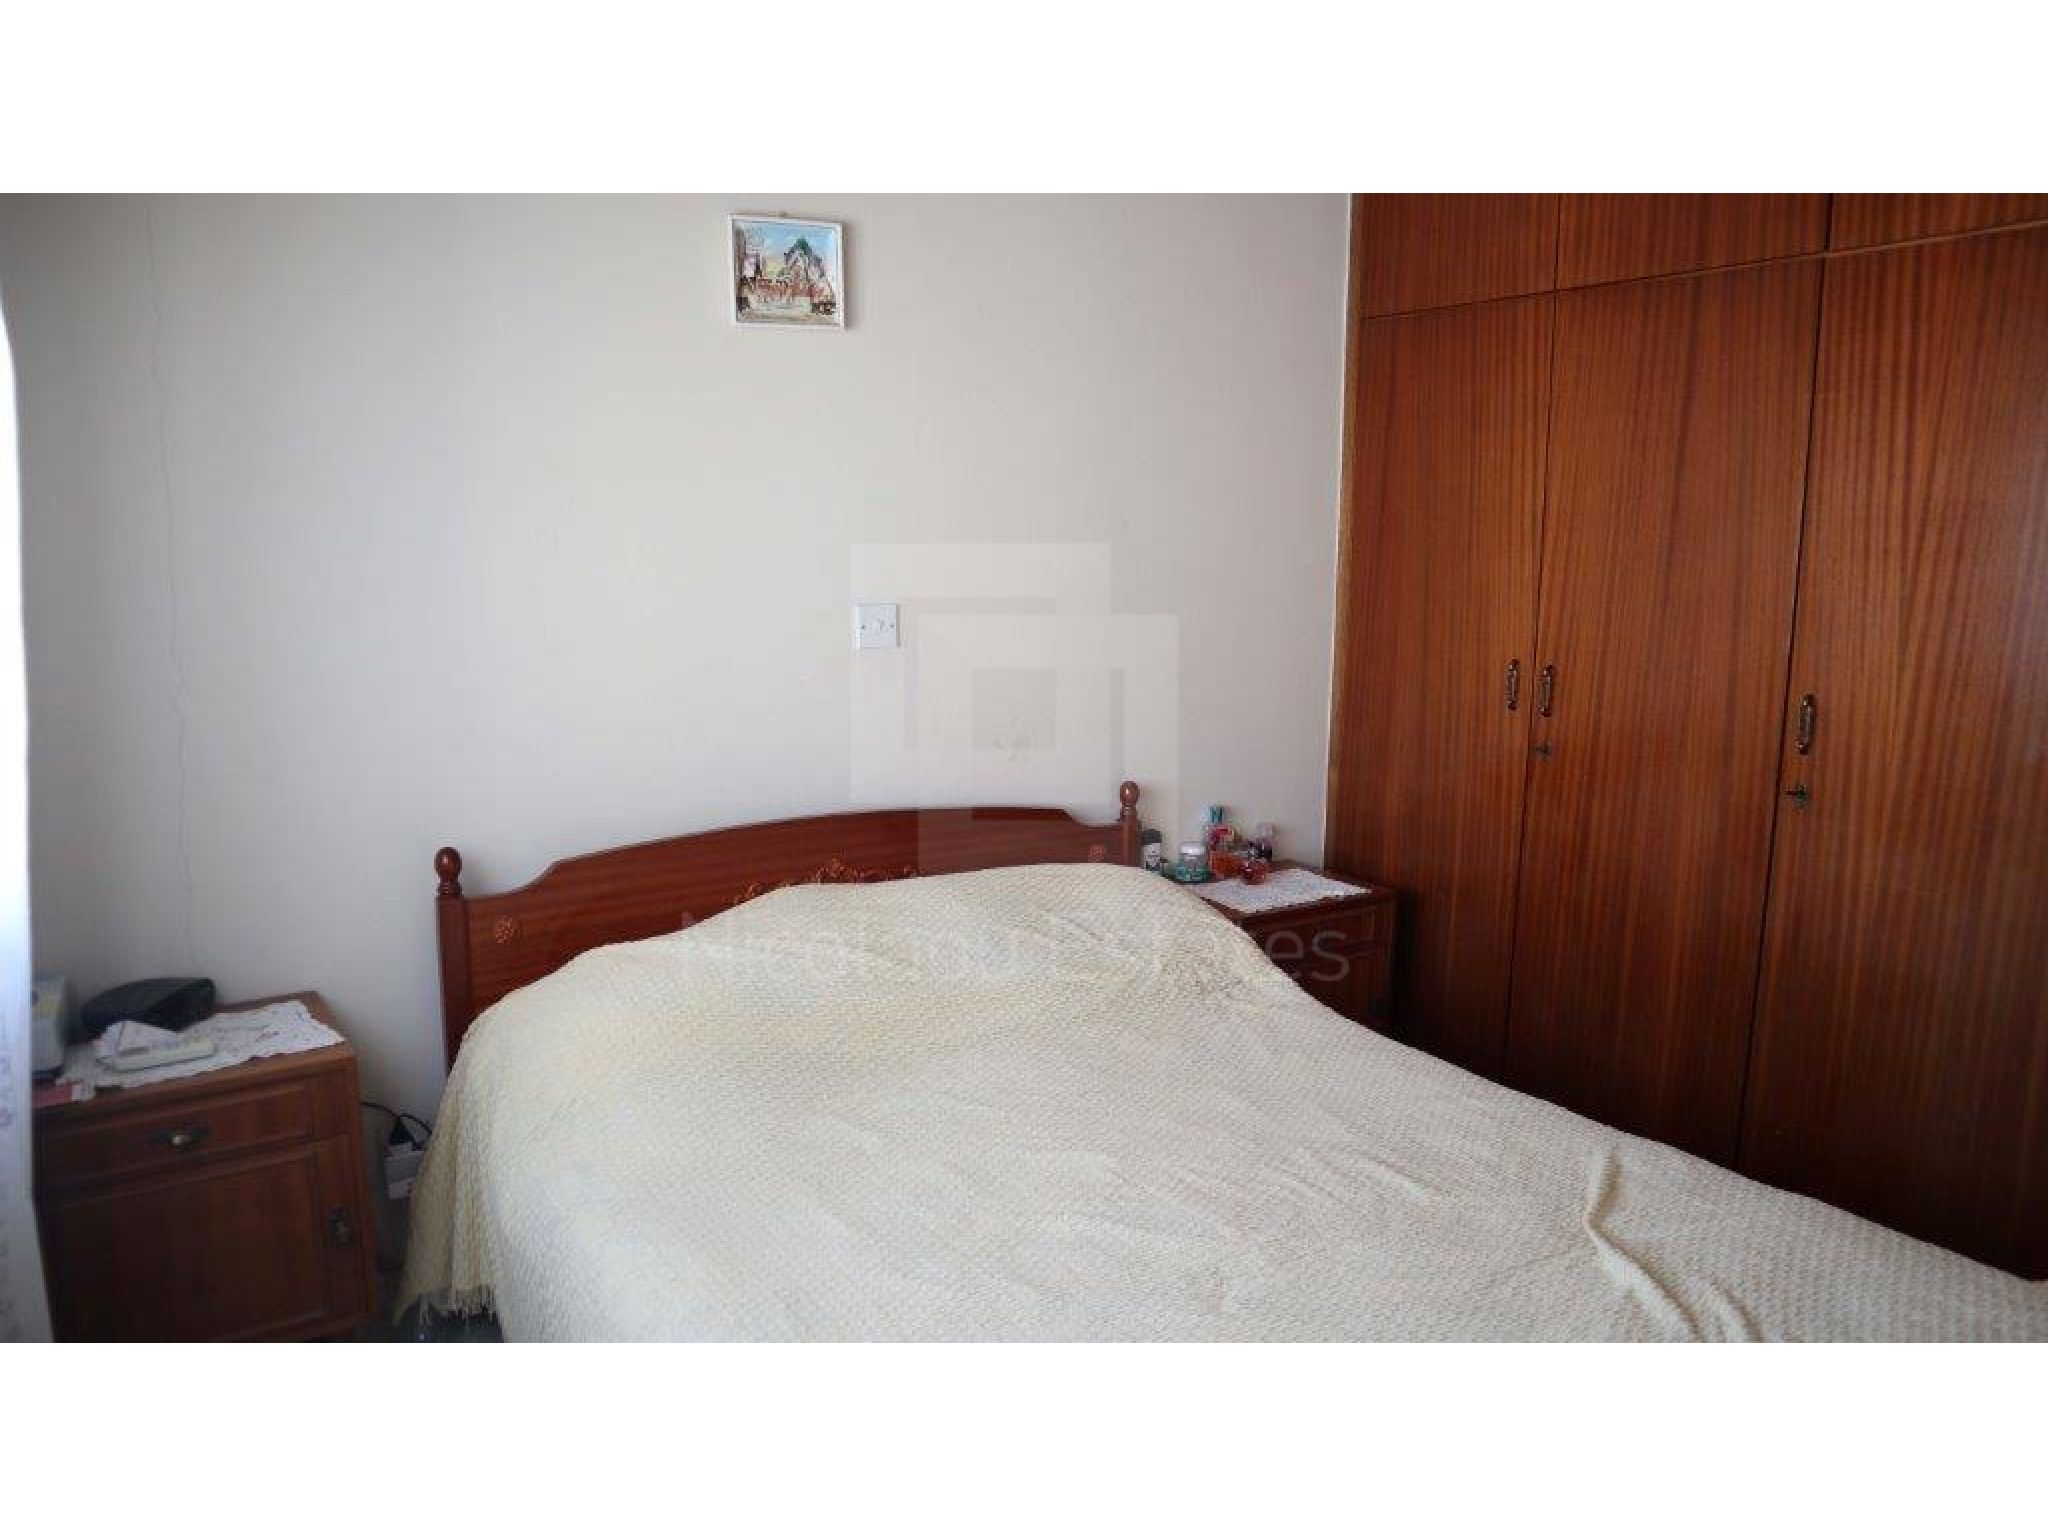 https://www.propertiescy.com/images/uploads/listings/large/12113-1567491038_neapolis-apartment-2.jpg